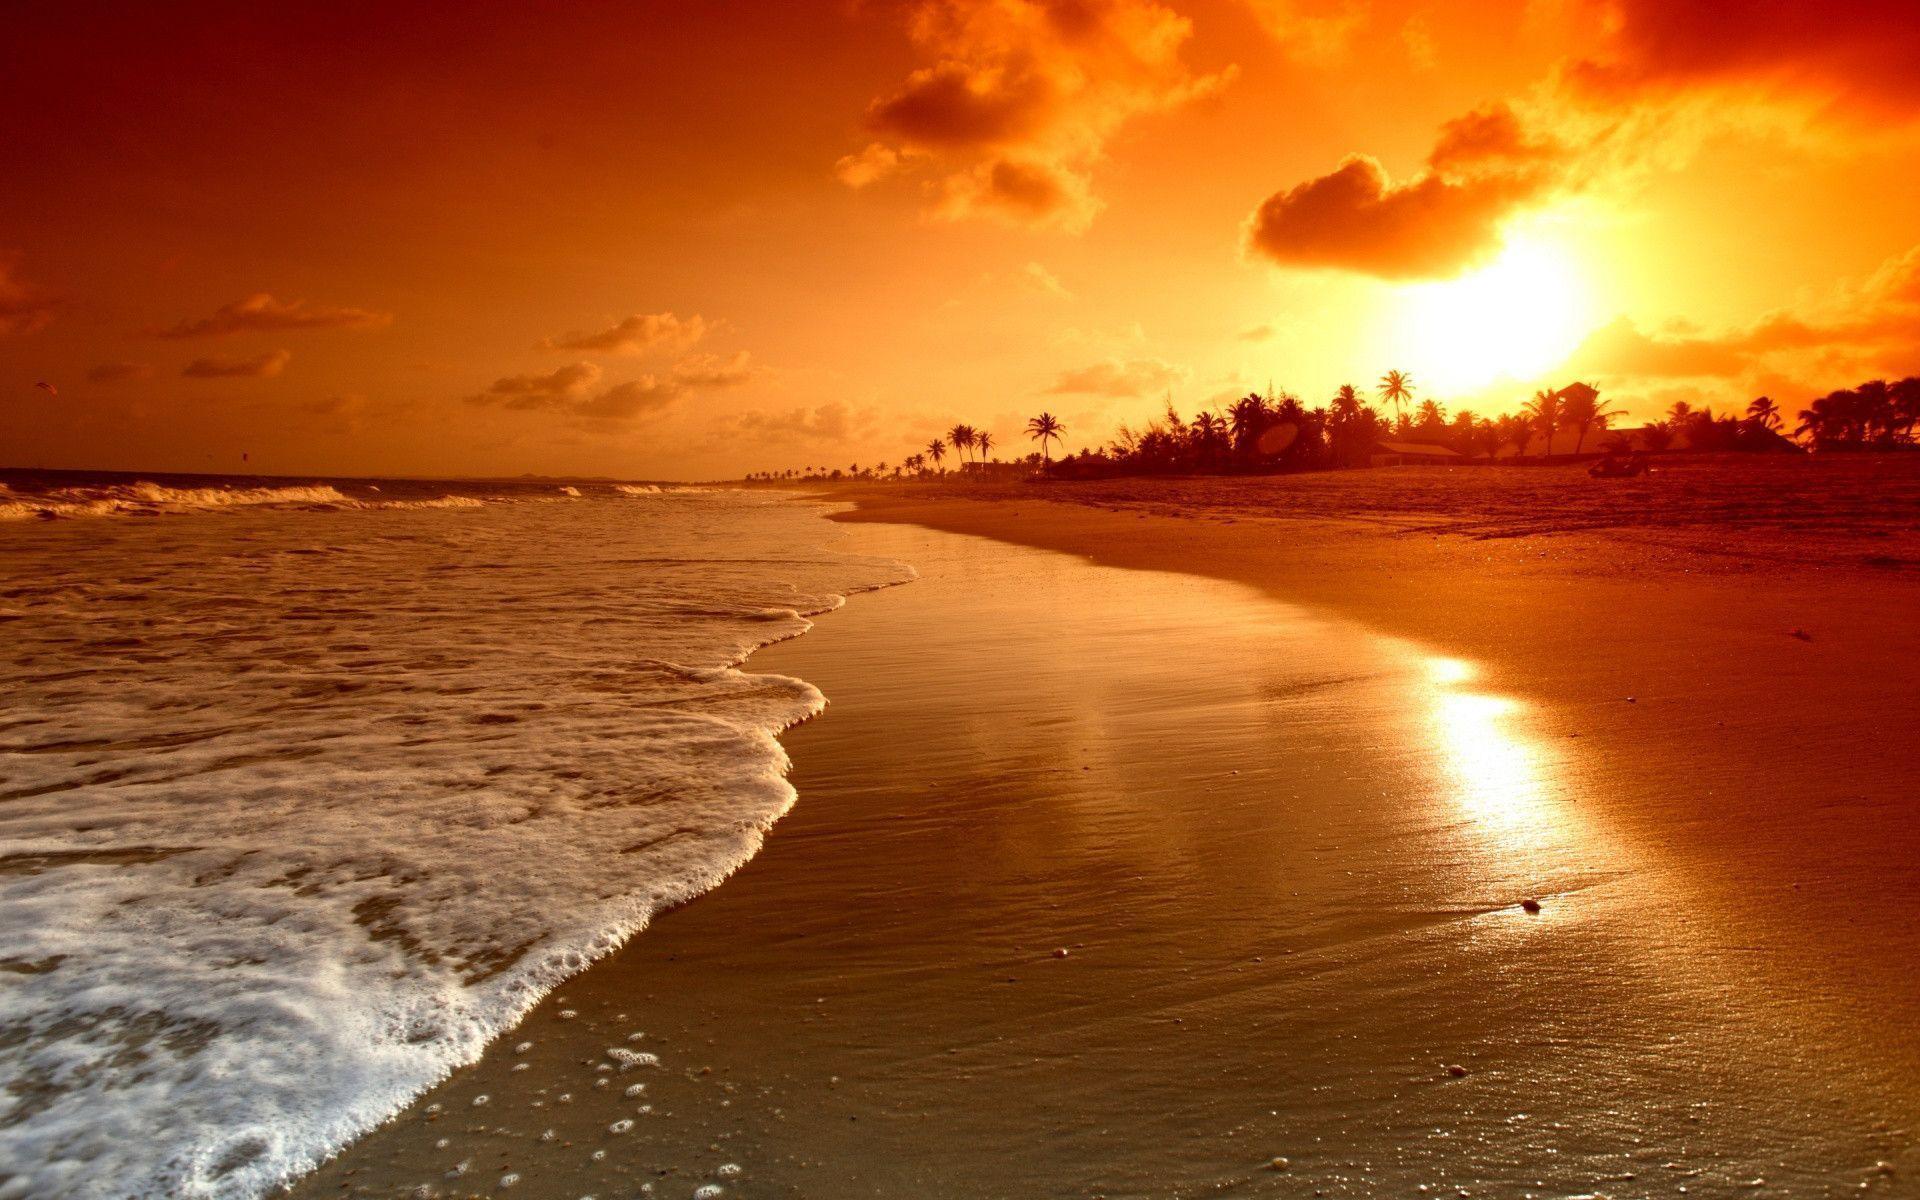 Sunset Beach HD Wallpaper. Beach sunset Desktop Image. Cool